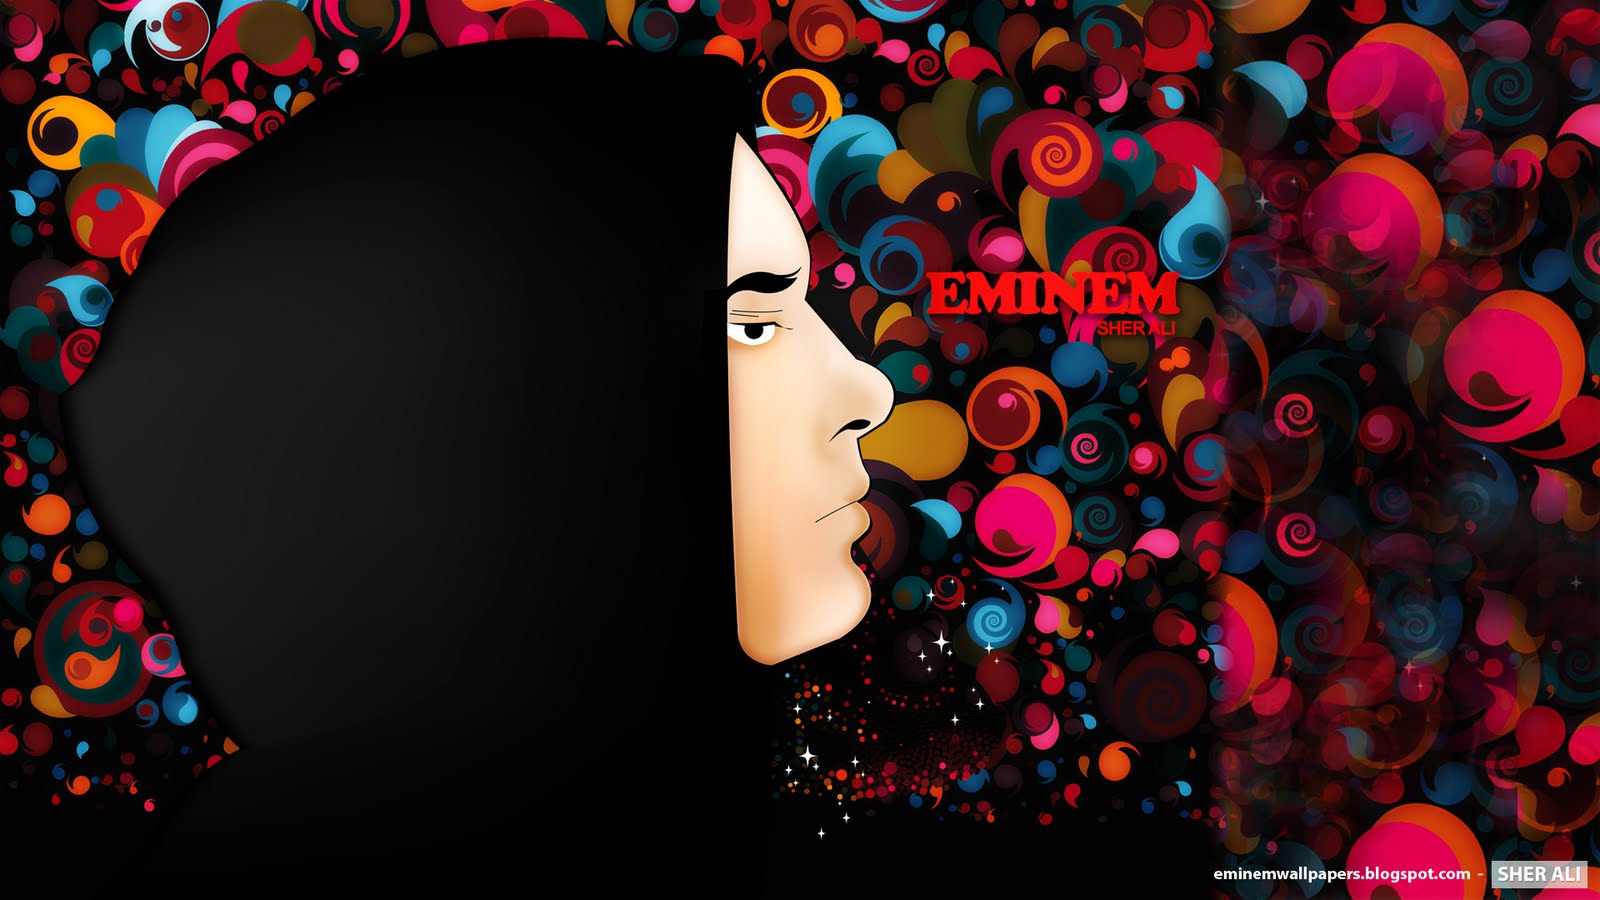 Eminem Wallpaper Best New